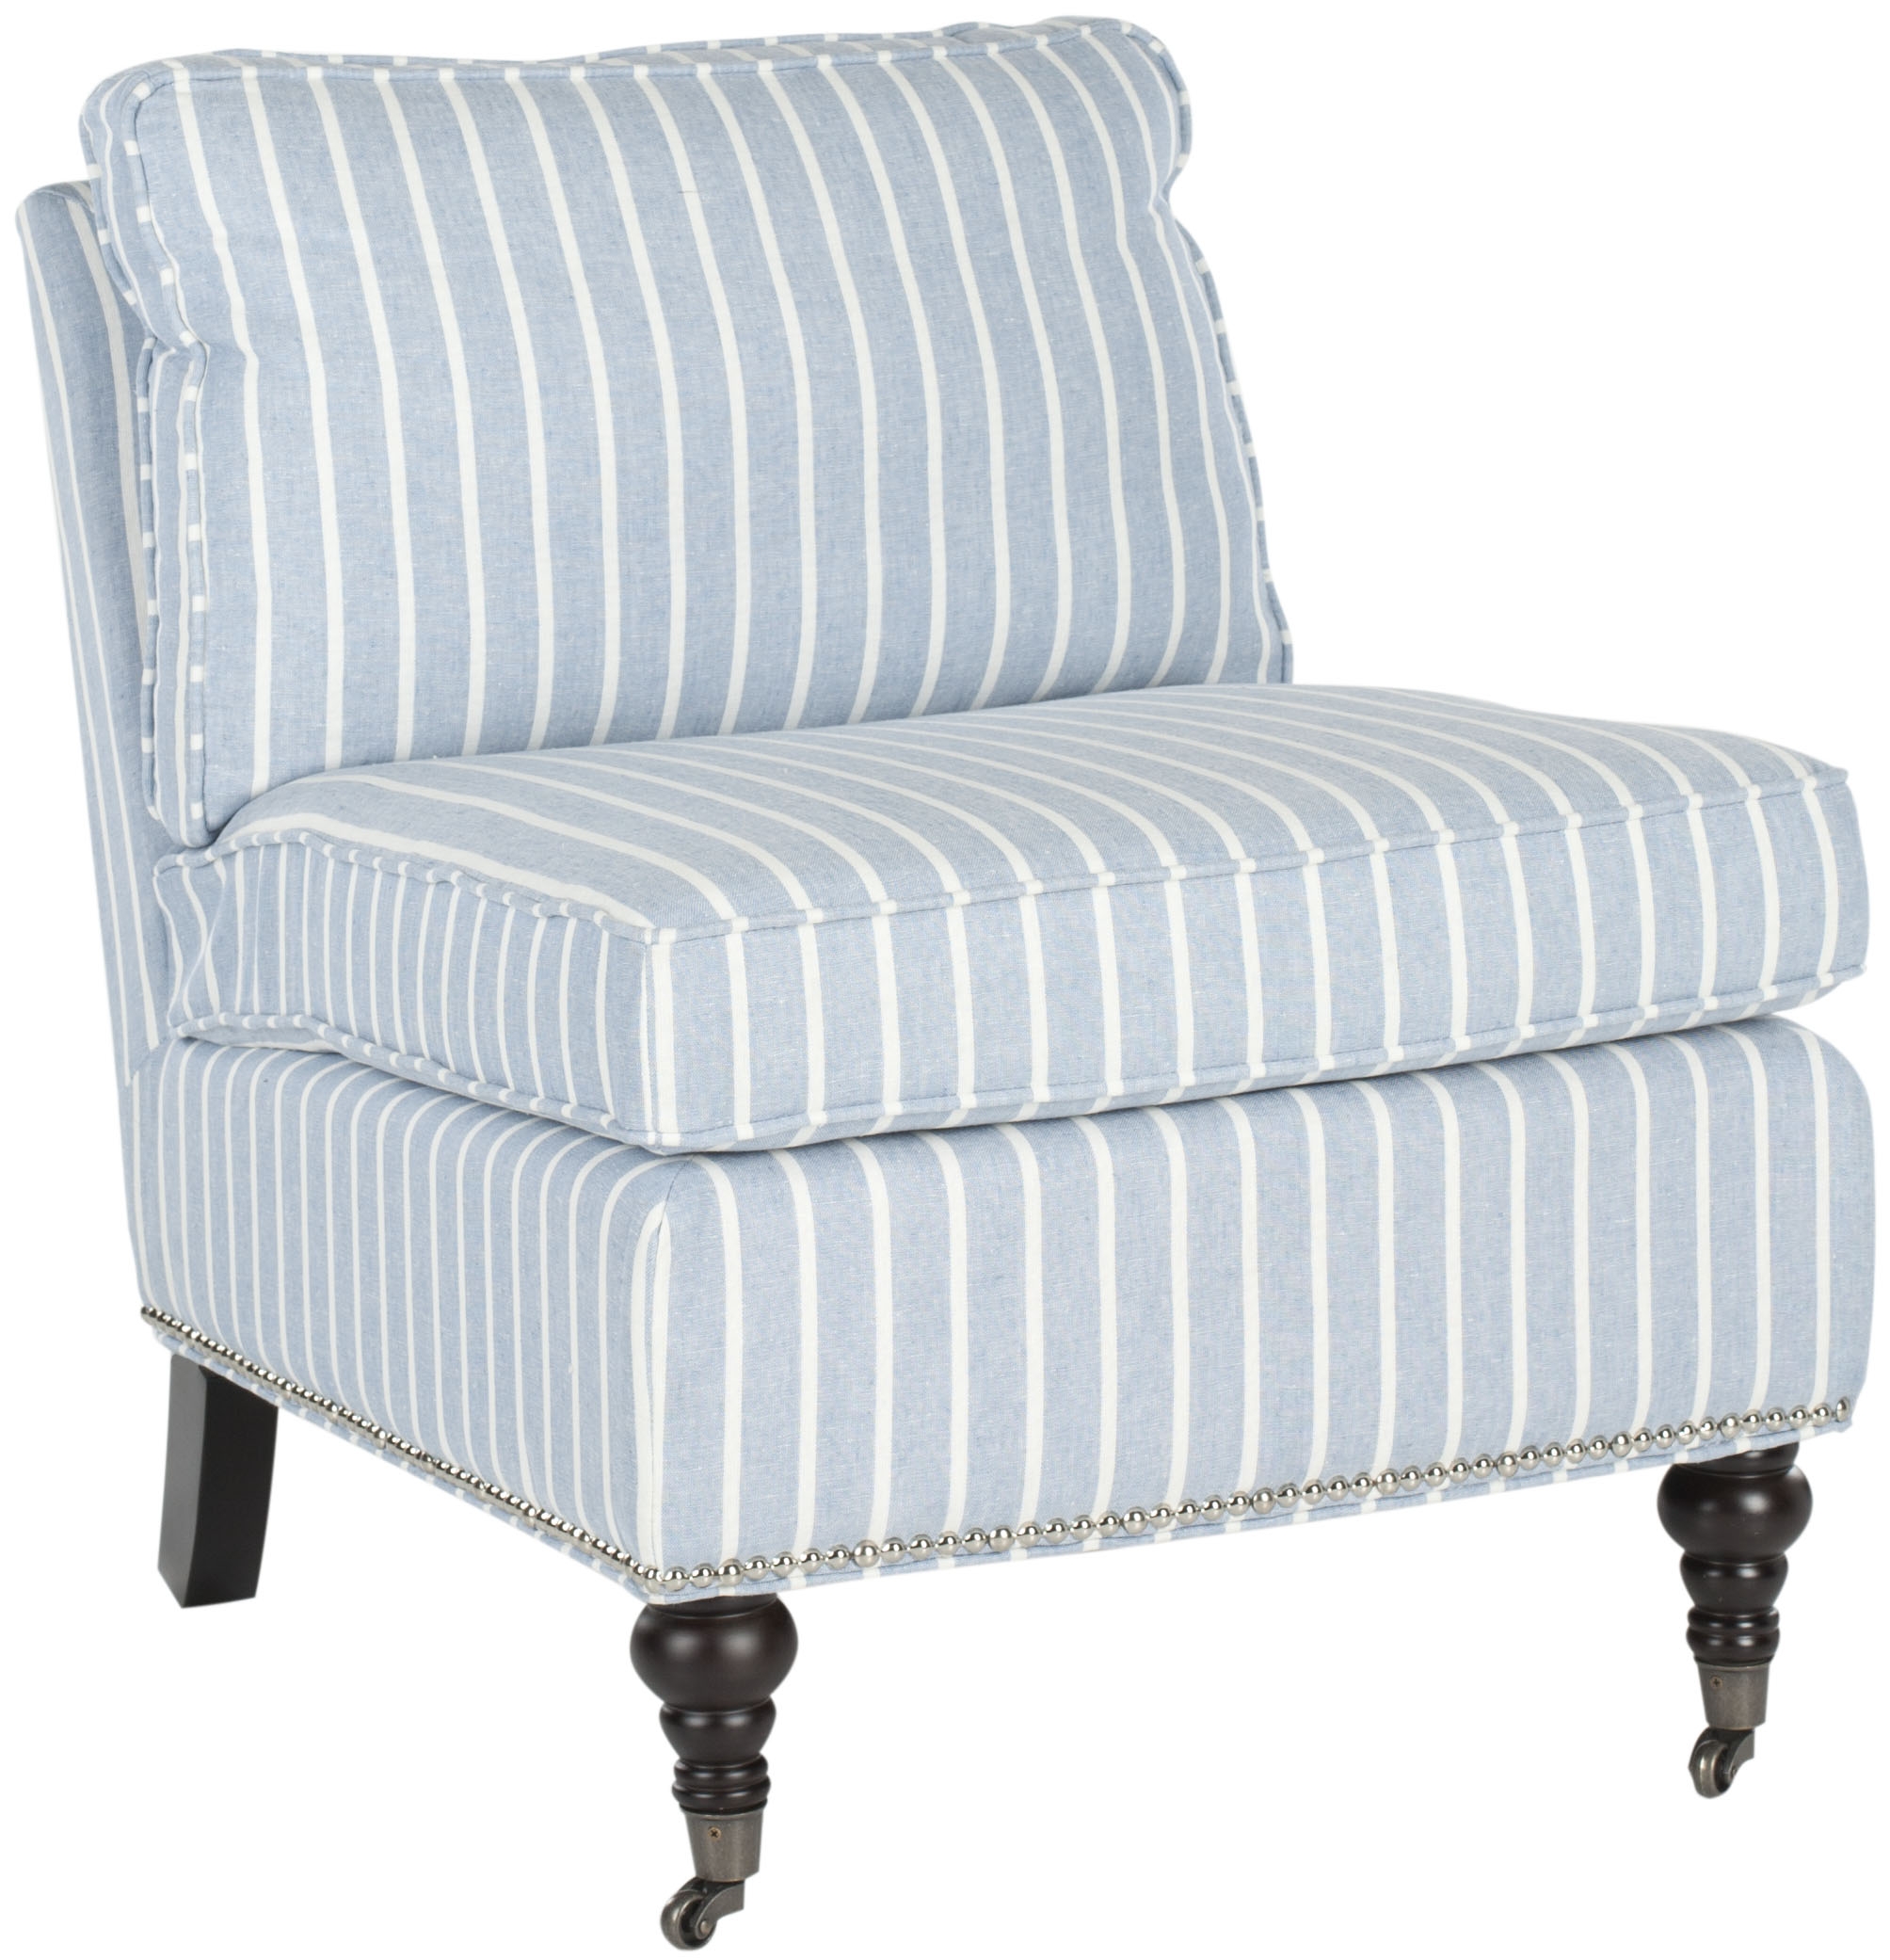 Randy Slipper Chair - Blue/White/Espresso - Arlo Home - Image 1